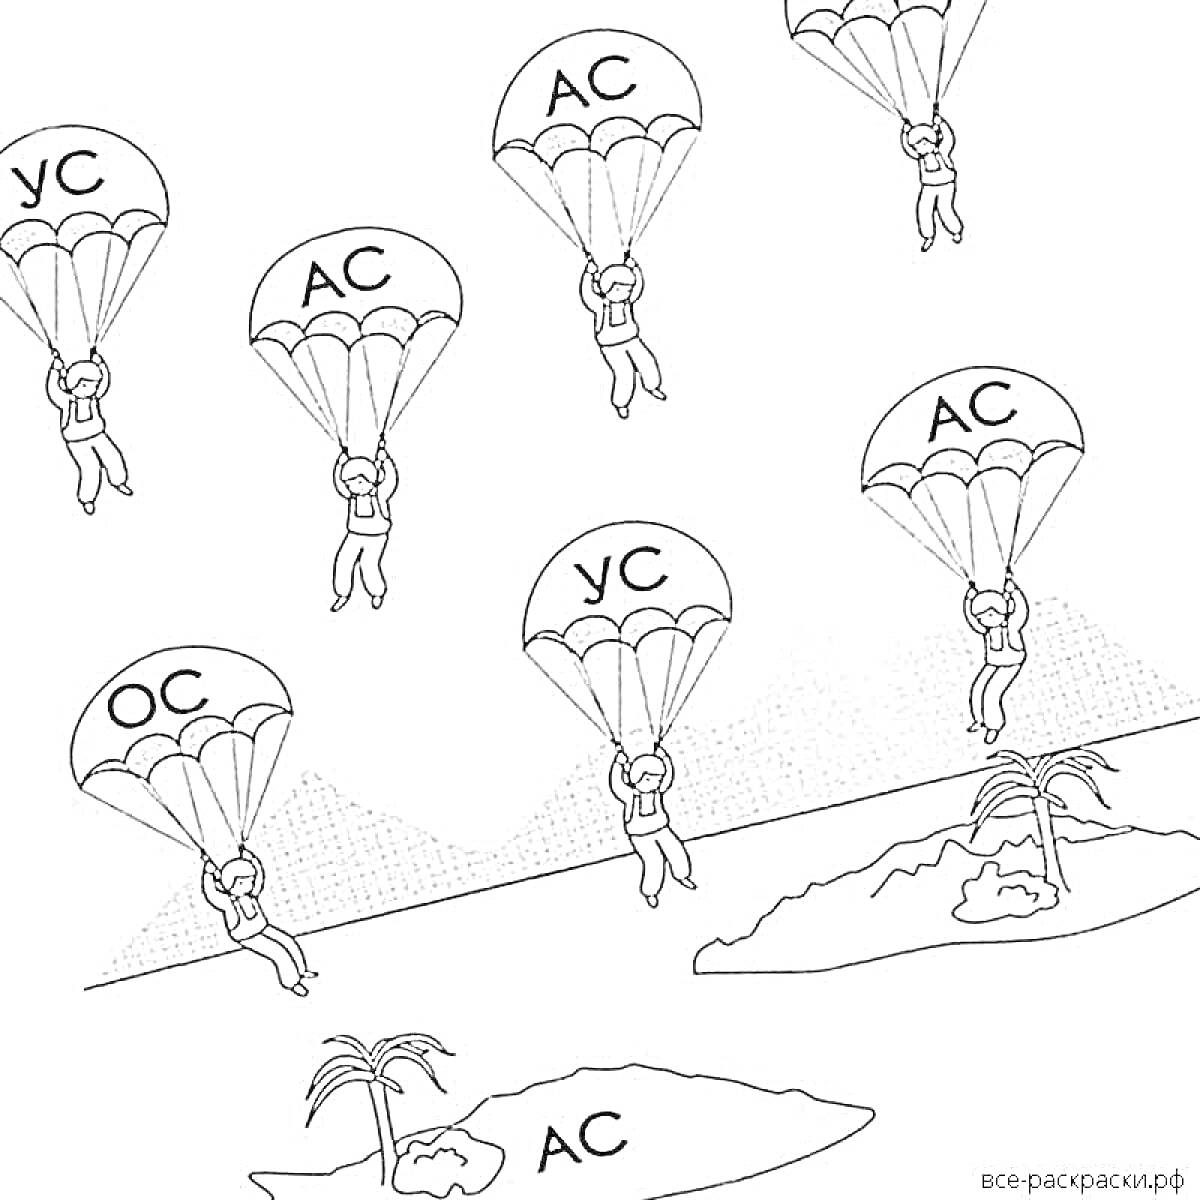 Раскраска парашютисты над сушей и водой с обозначениями УС, АС, ОС